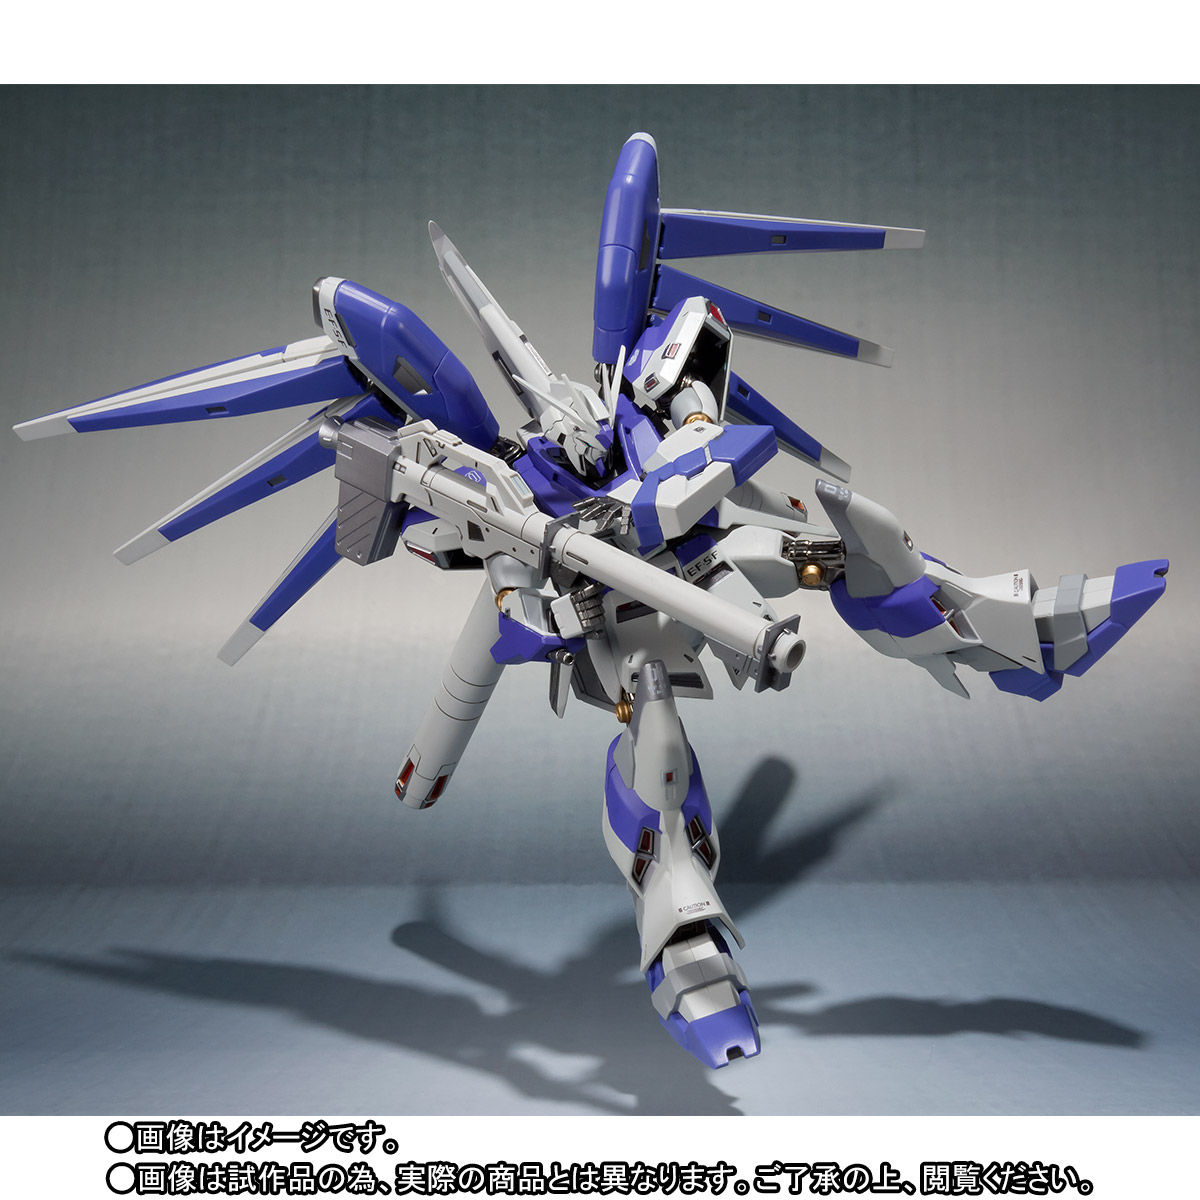 Metal Robot Spirits(Side MS) RX-93-ν2 Hi-ν Gundam～Beltorchika's Children～